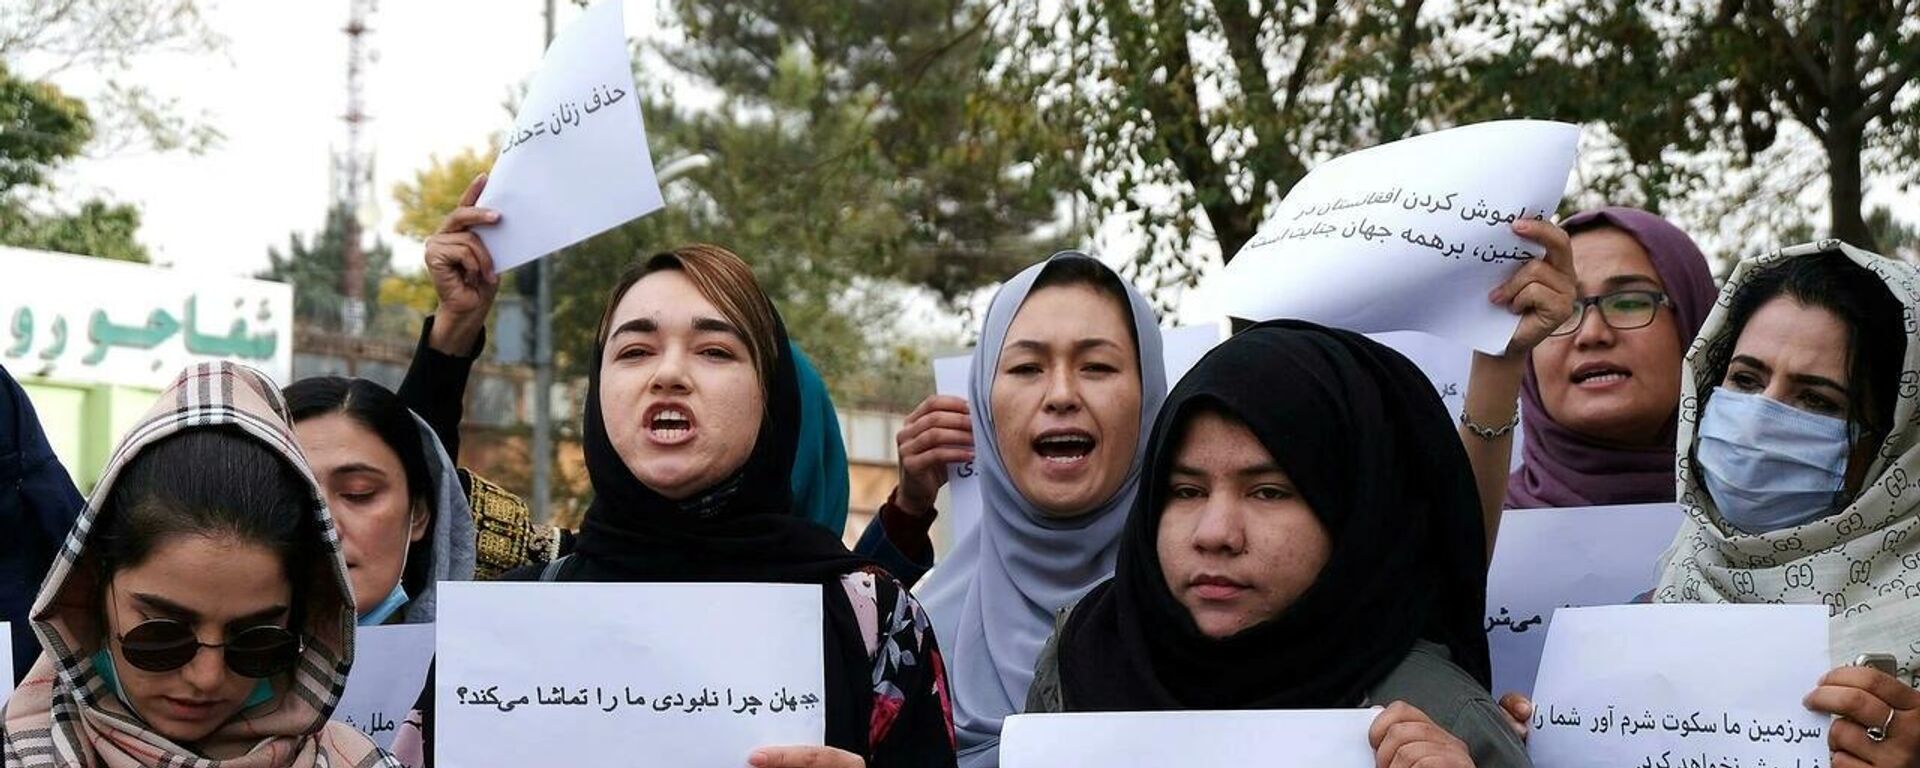 Afganistan'da kadın göstericiler, ülkede devam eden ekonomik kriz karşısında uluslararası toplumun sessiz kalmasını protesto etti. - Sputnik Türkiye, 1920, 26.10.2021